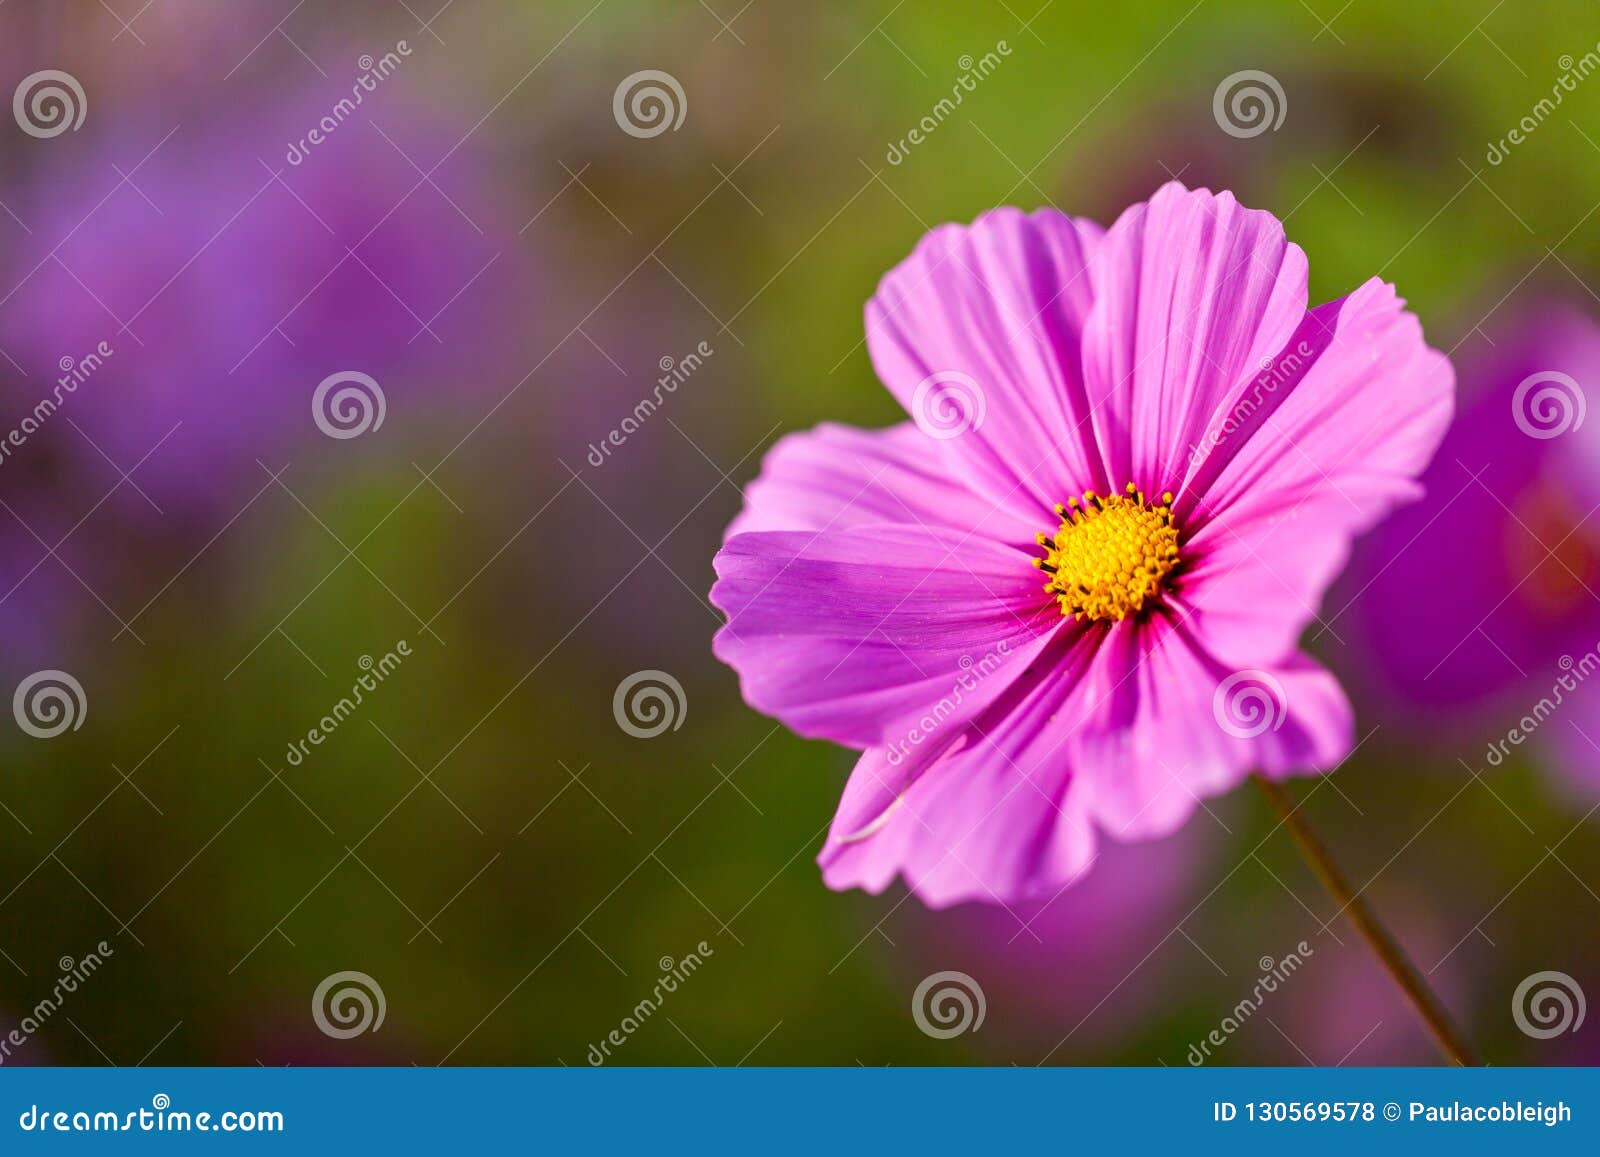 Une Jolie Fleur Rose De Cosmos Avec La Profondeur Du Champ Photo stock -  Image du horizontal, floral: 130569578